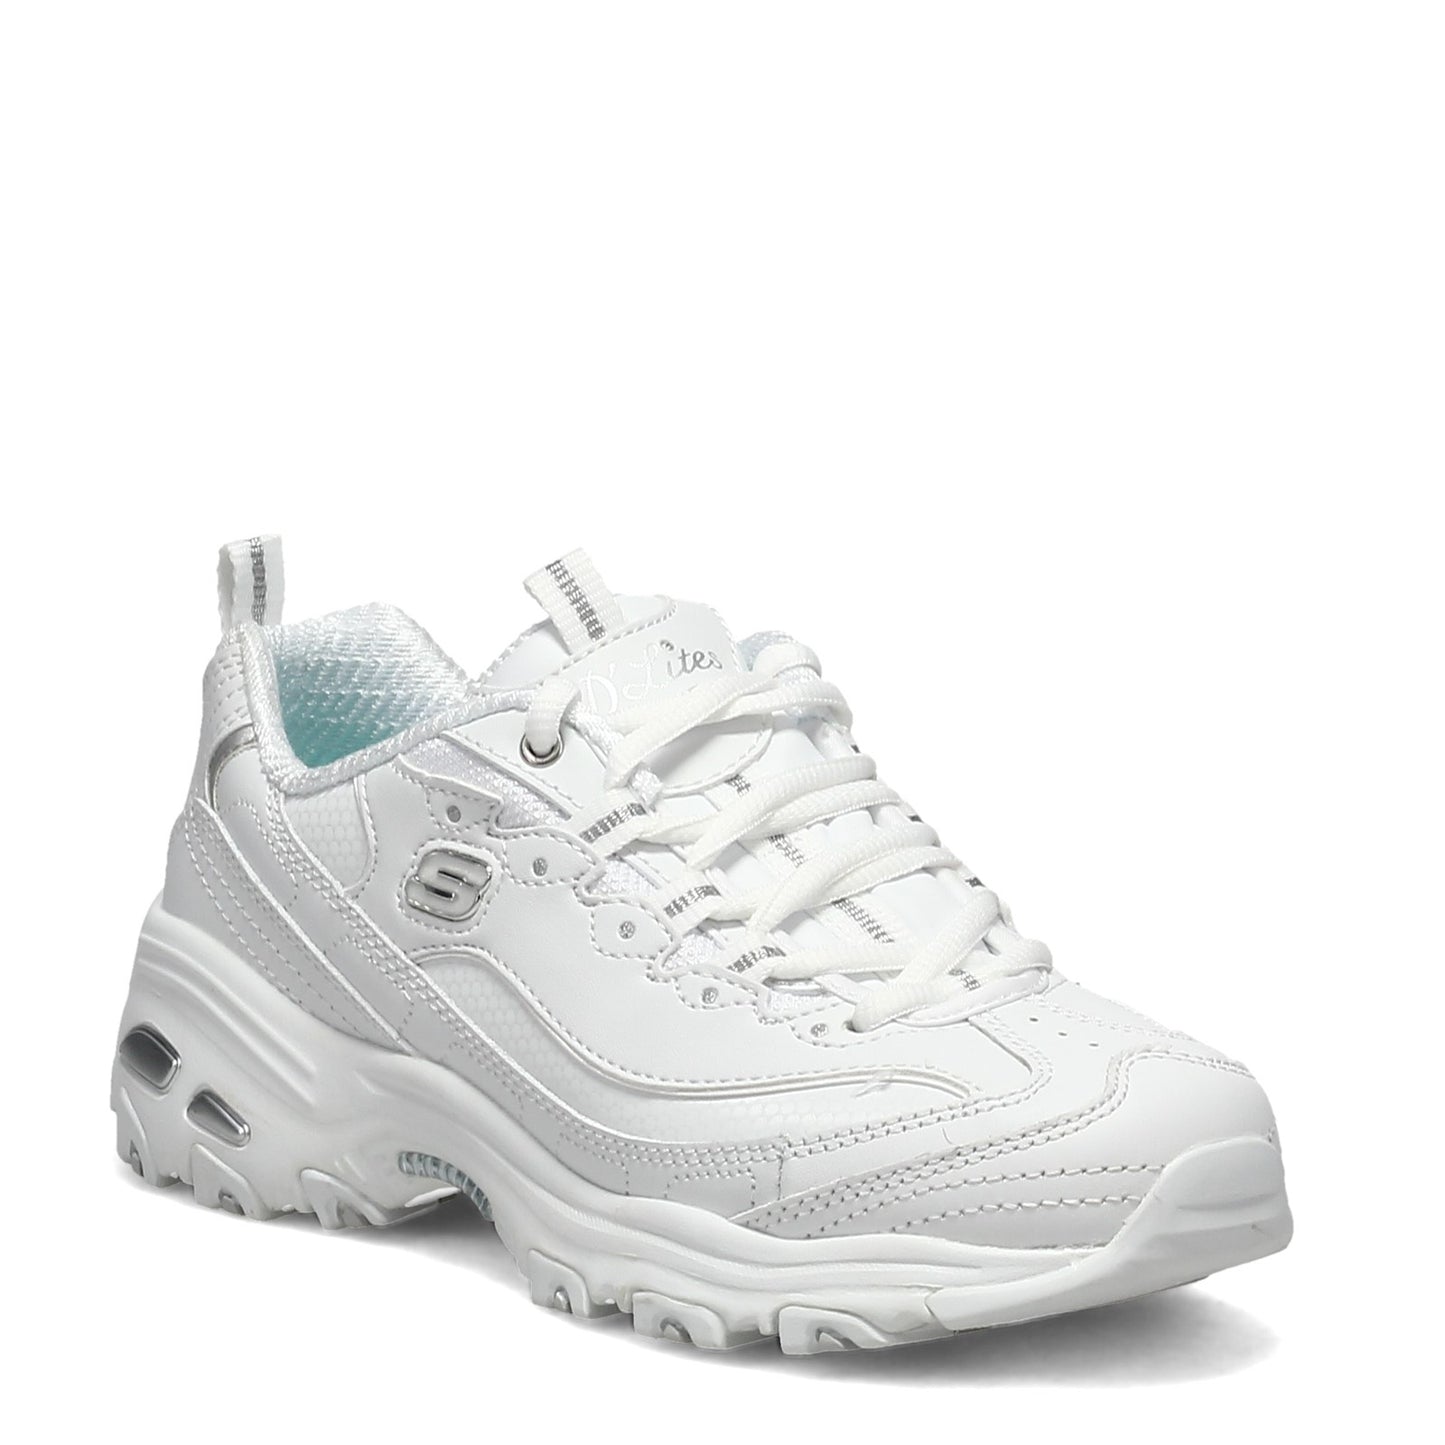 Peltz Shoes  Women's Skechers D'Lites - Fresh Start Sneaker - Wide Width White/Mesh/Silver 11931EW-WSL